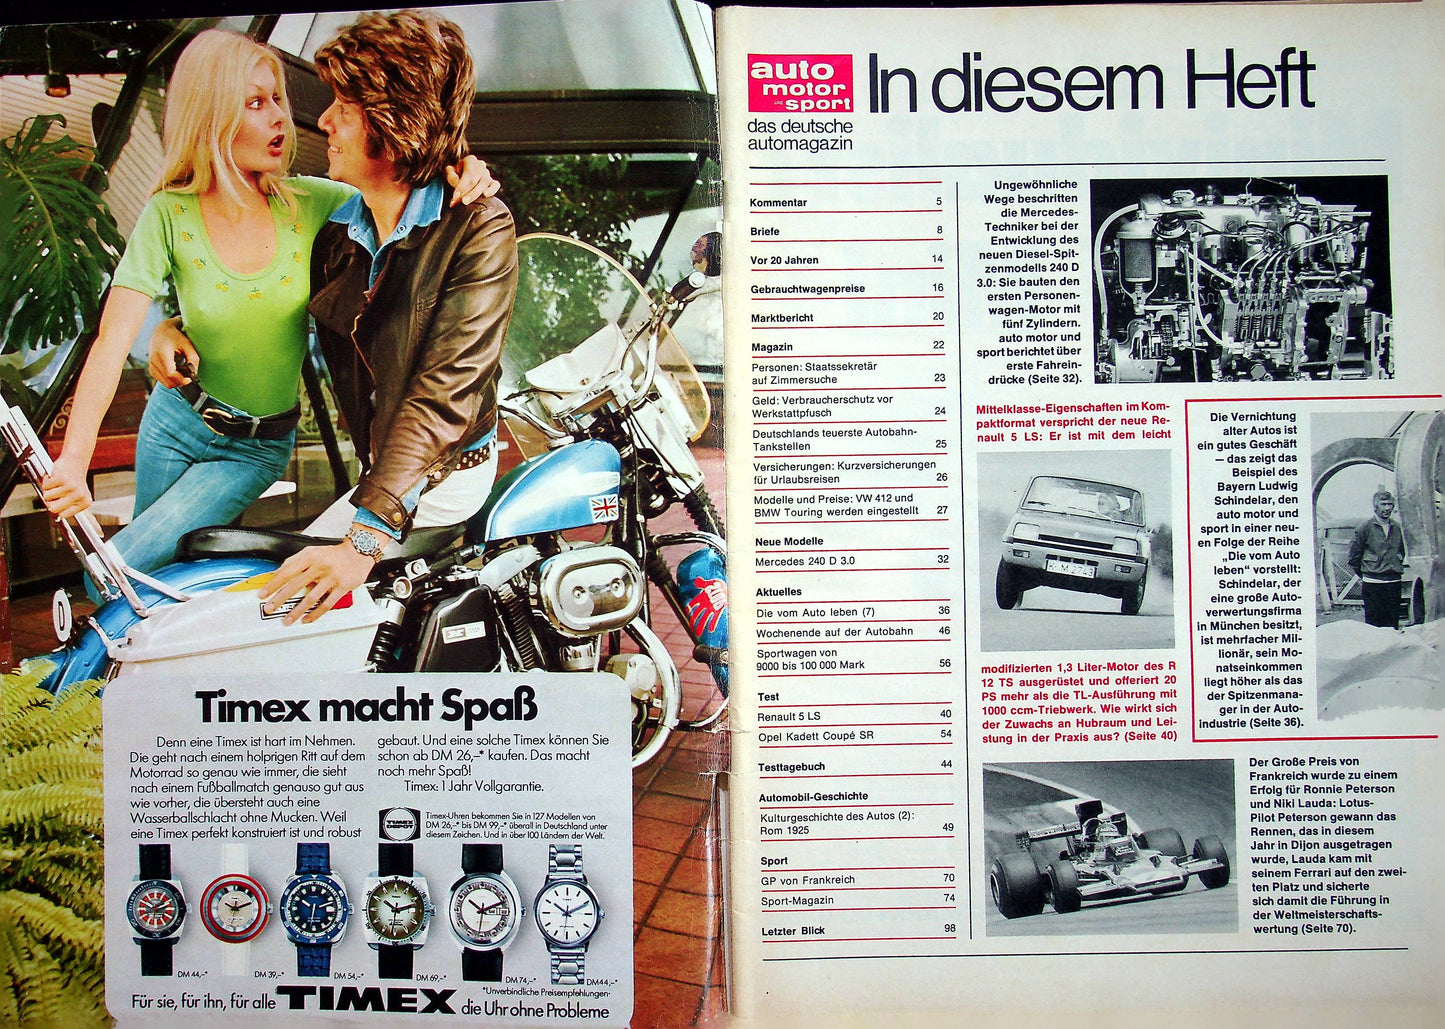 Auto Motor und Sport 15/1974